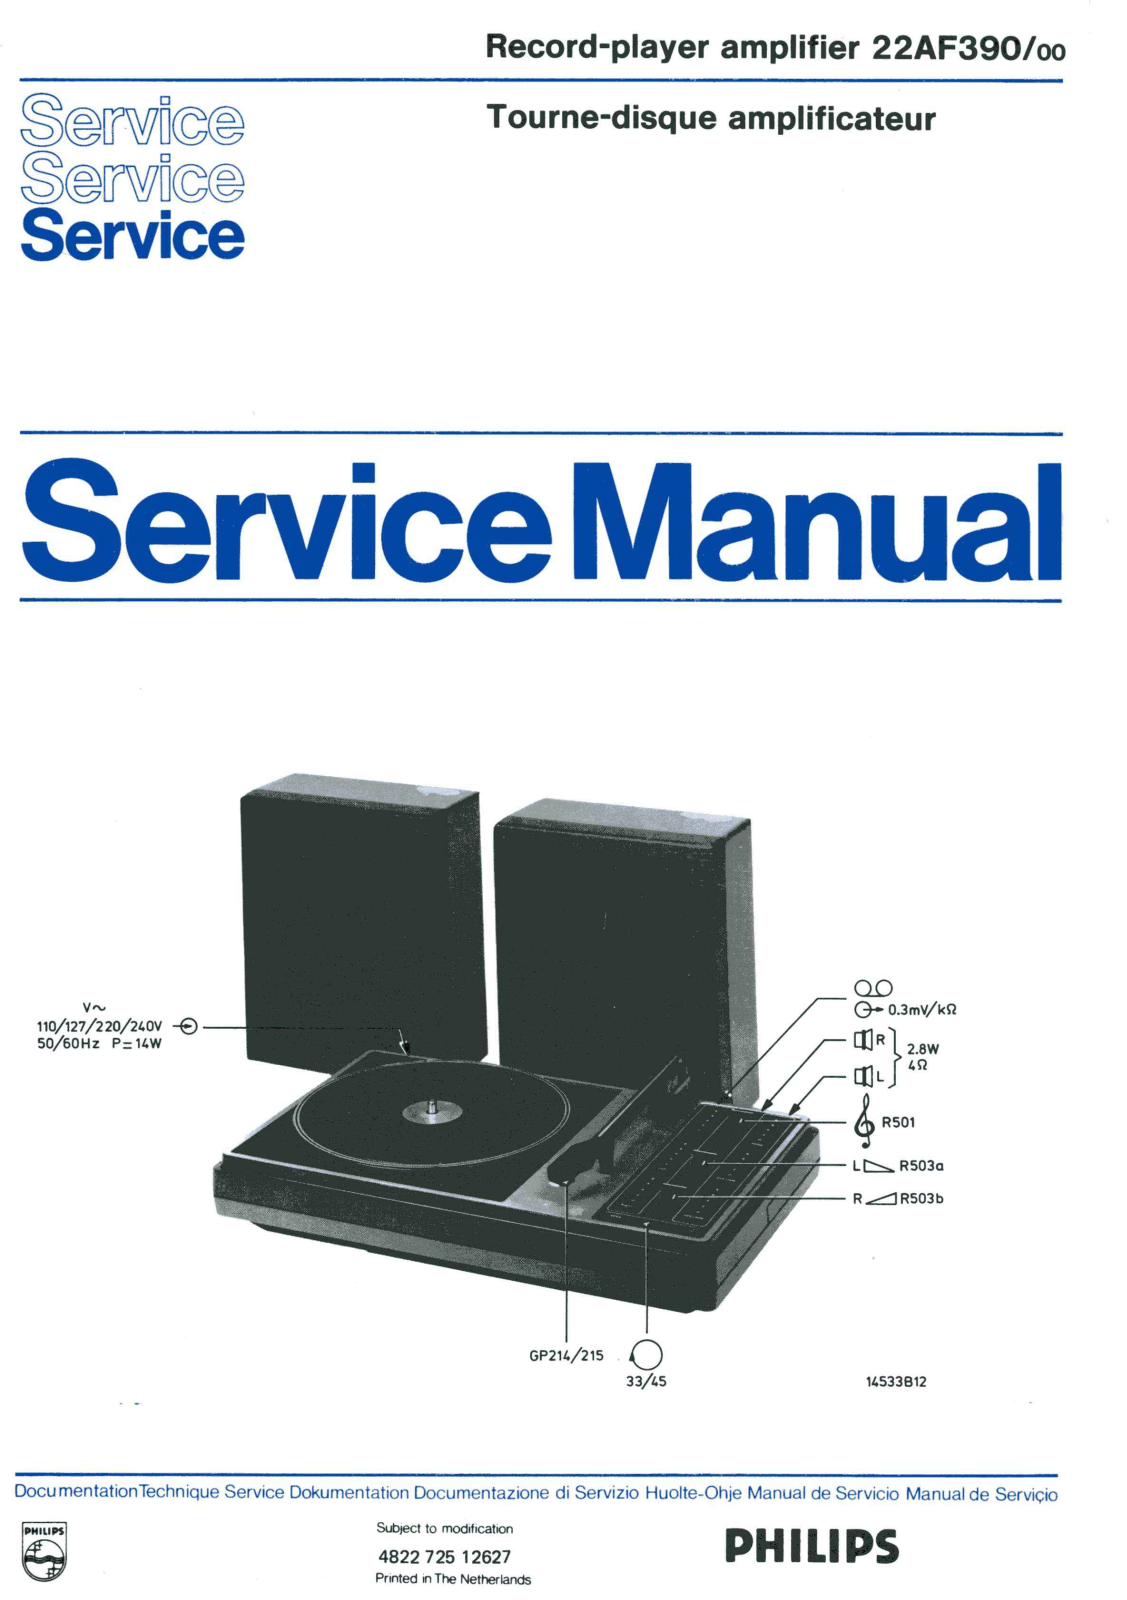 Philips AF-390 Service Manual